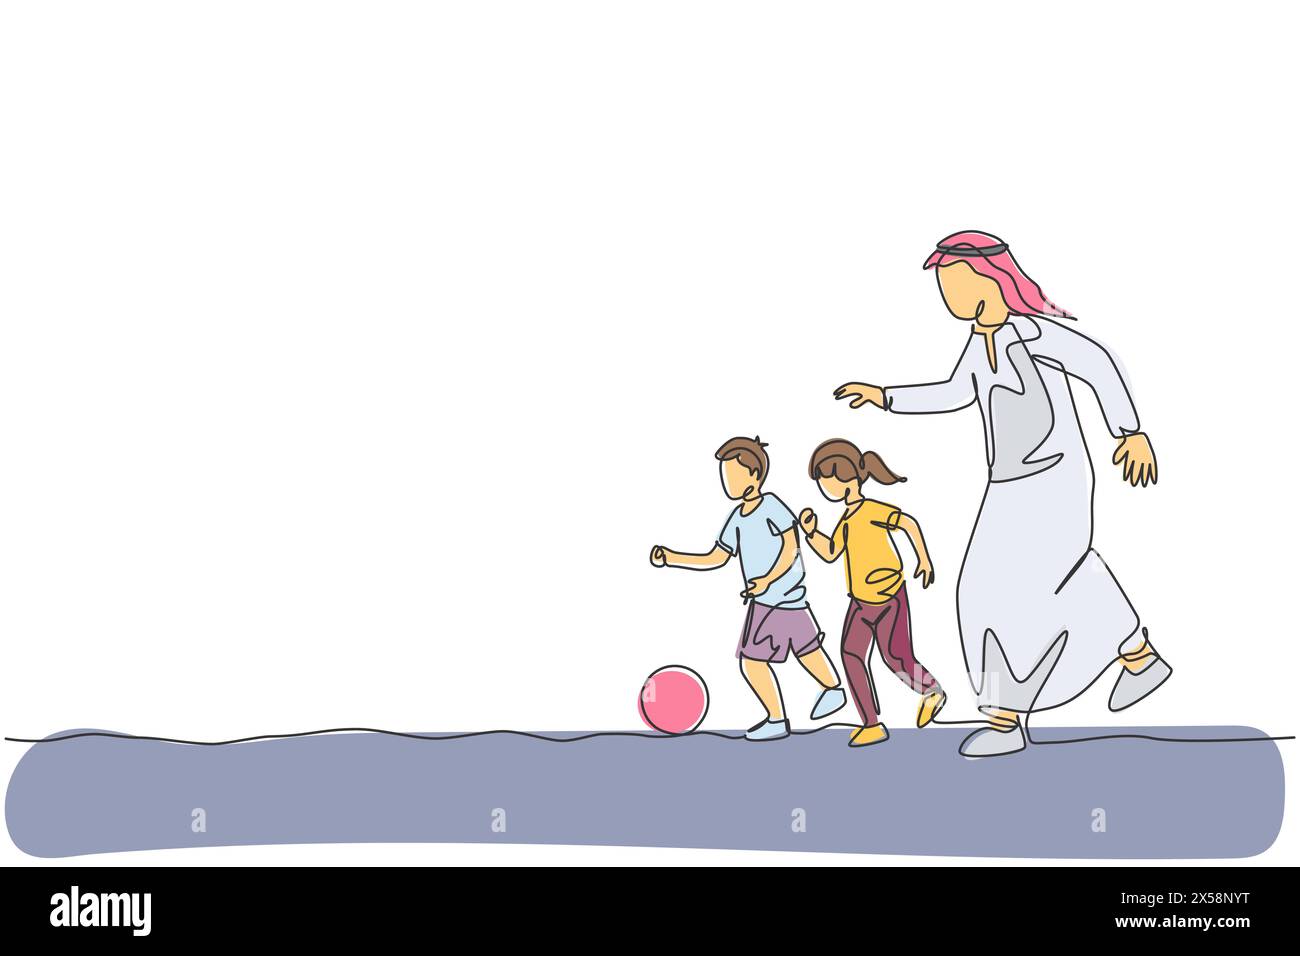 Dessin en ligne continue unique d'un jeune père arabe qui court et joue au football avec son fils et sa fille. musulman musulman Happy Family paternhood Conce Illustration de Vecteur